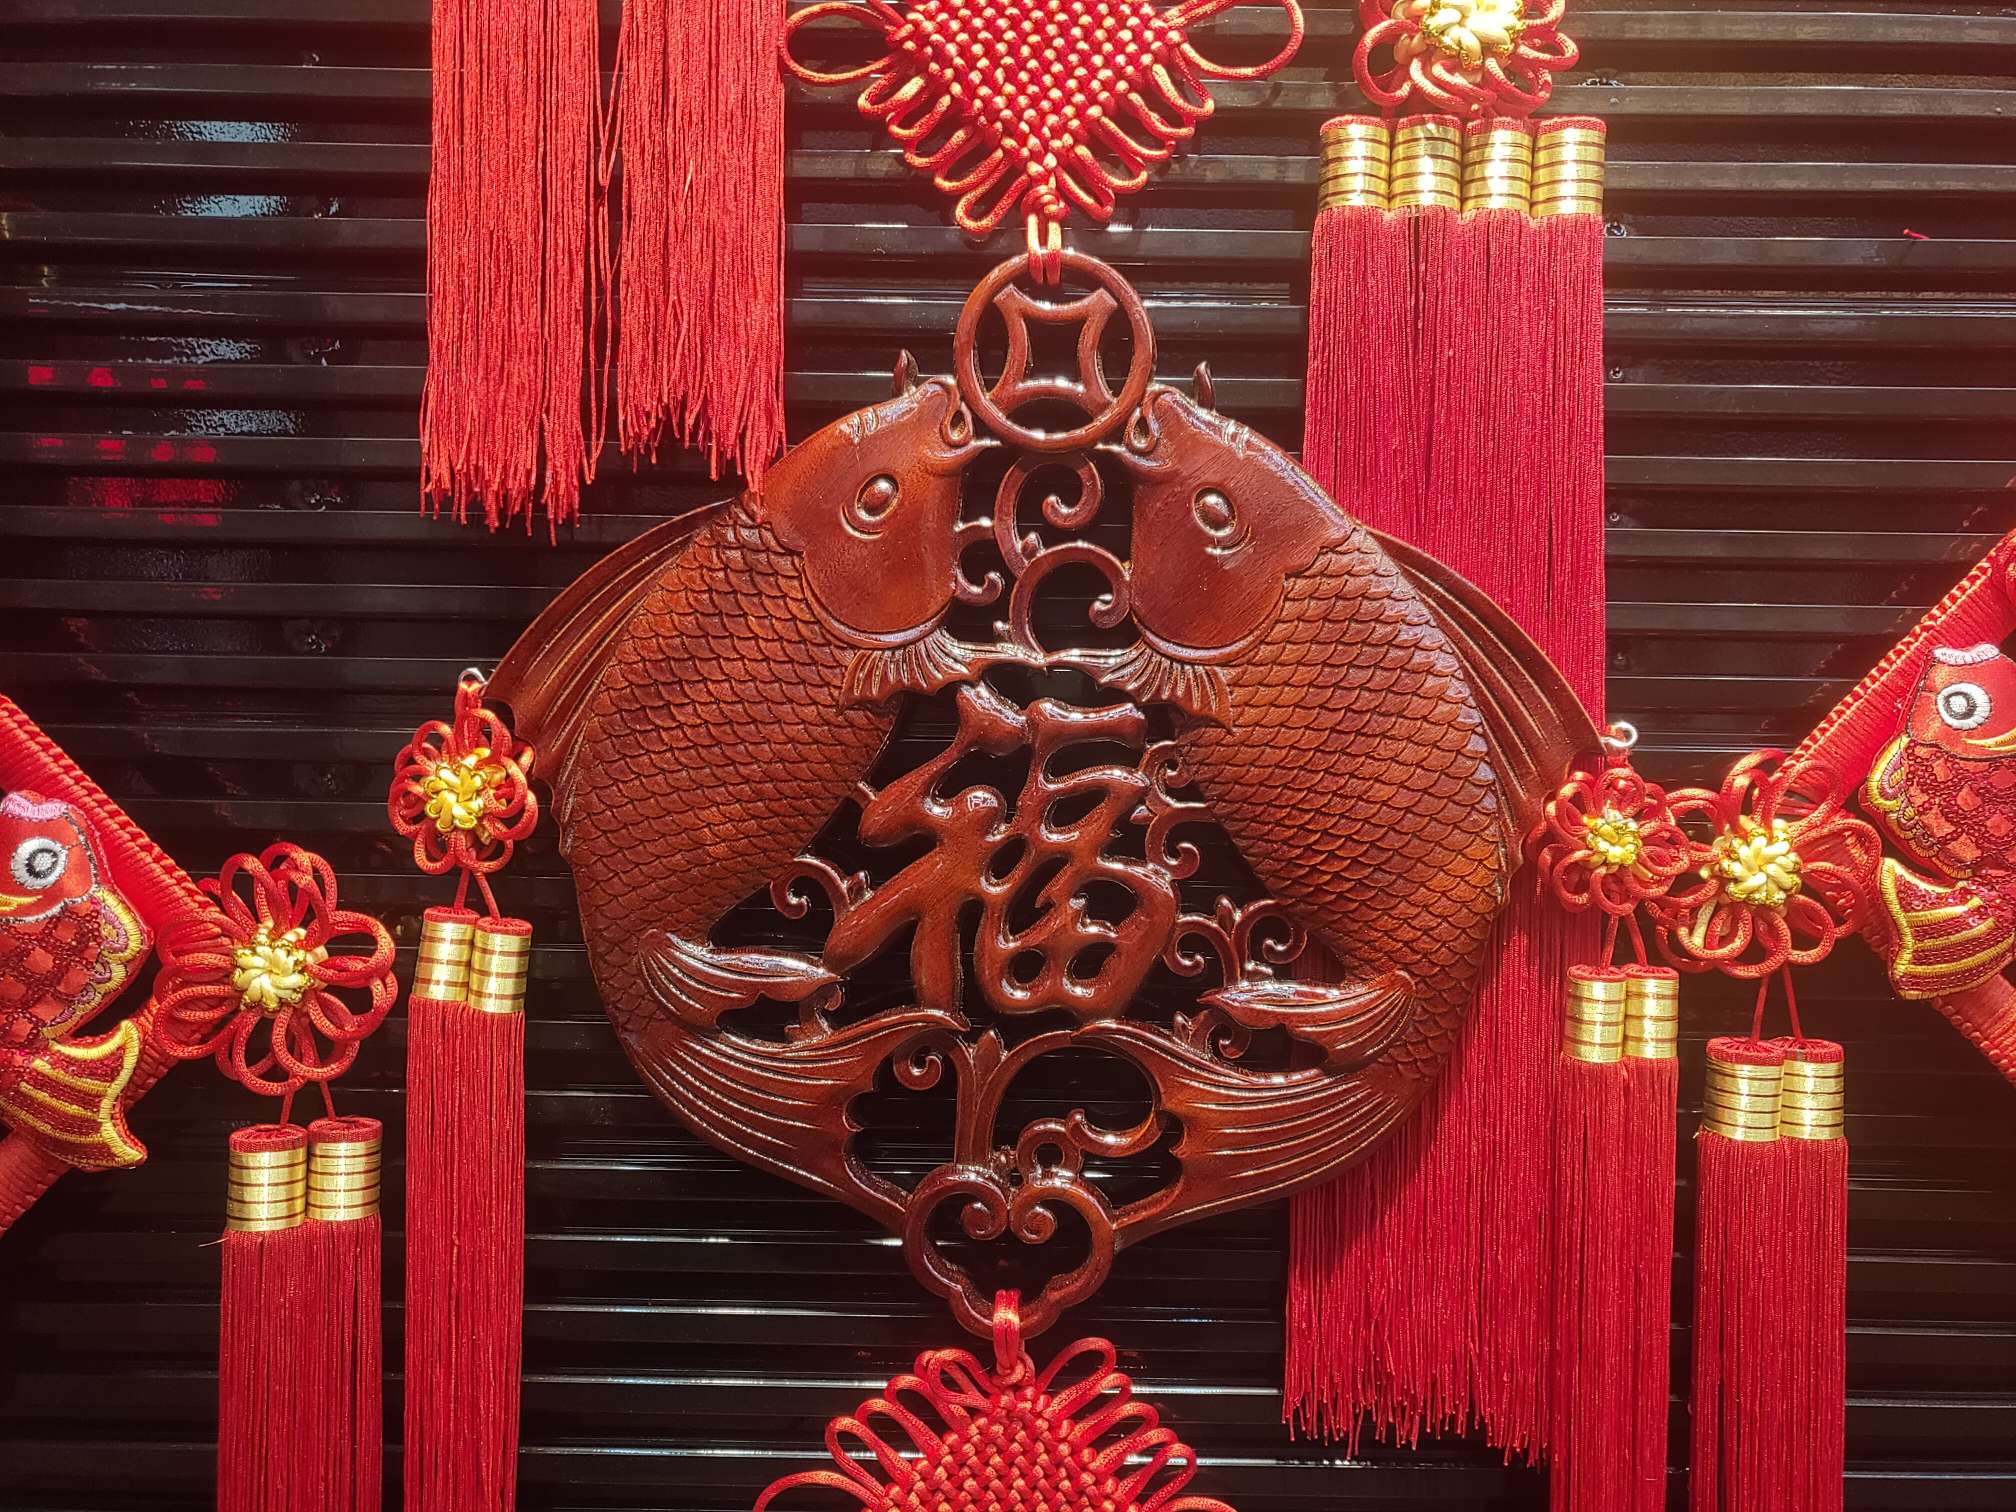 40#方形木雕50春节喜庆用品节日用品红木精品